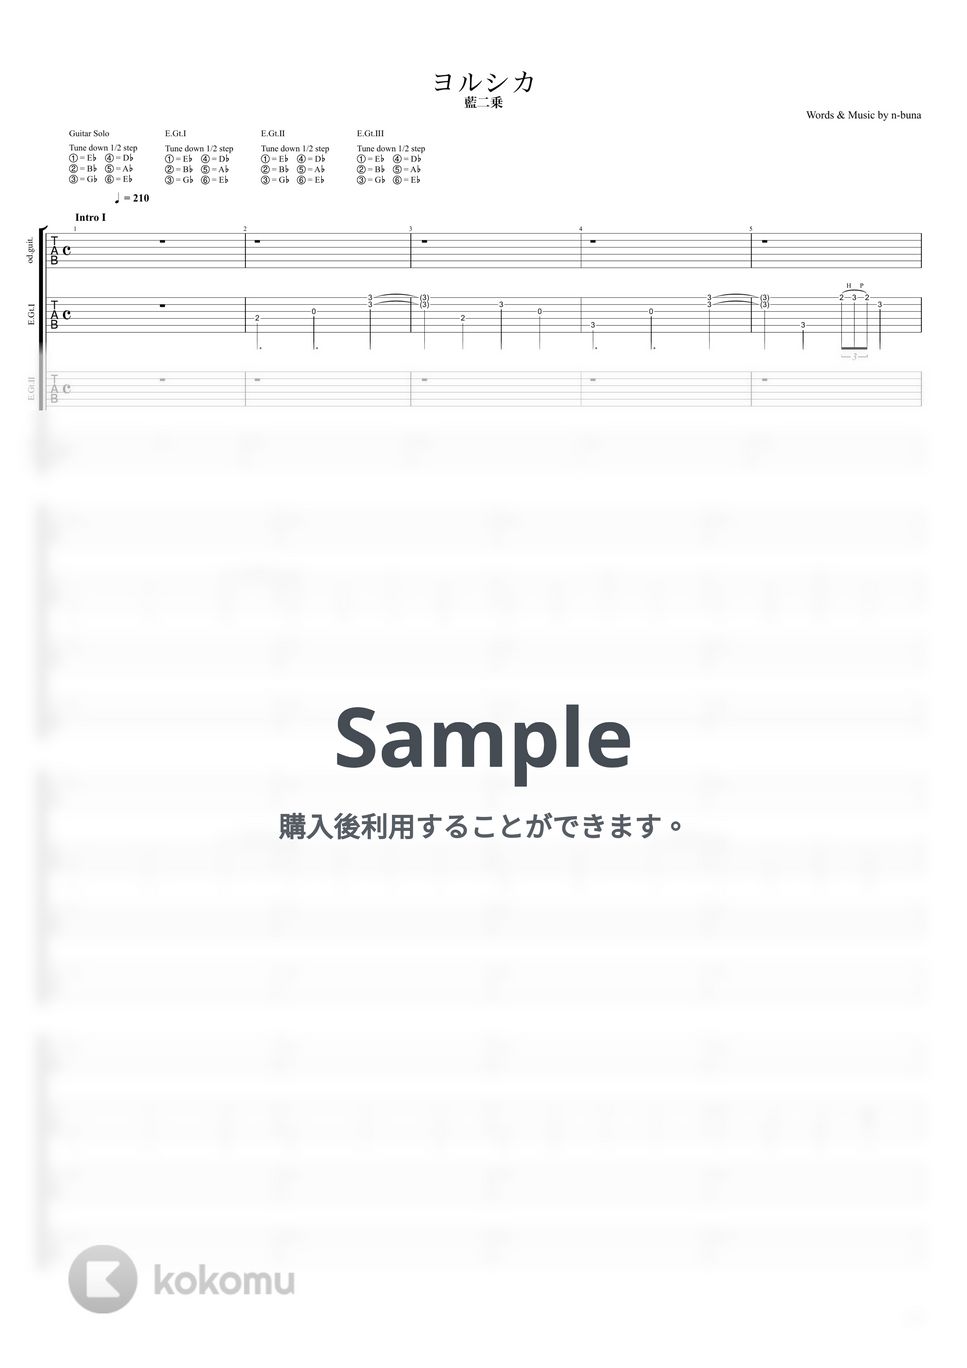 ヨルシカ - 藍二乗 (エレキギター) by キリギリス